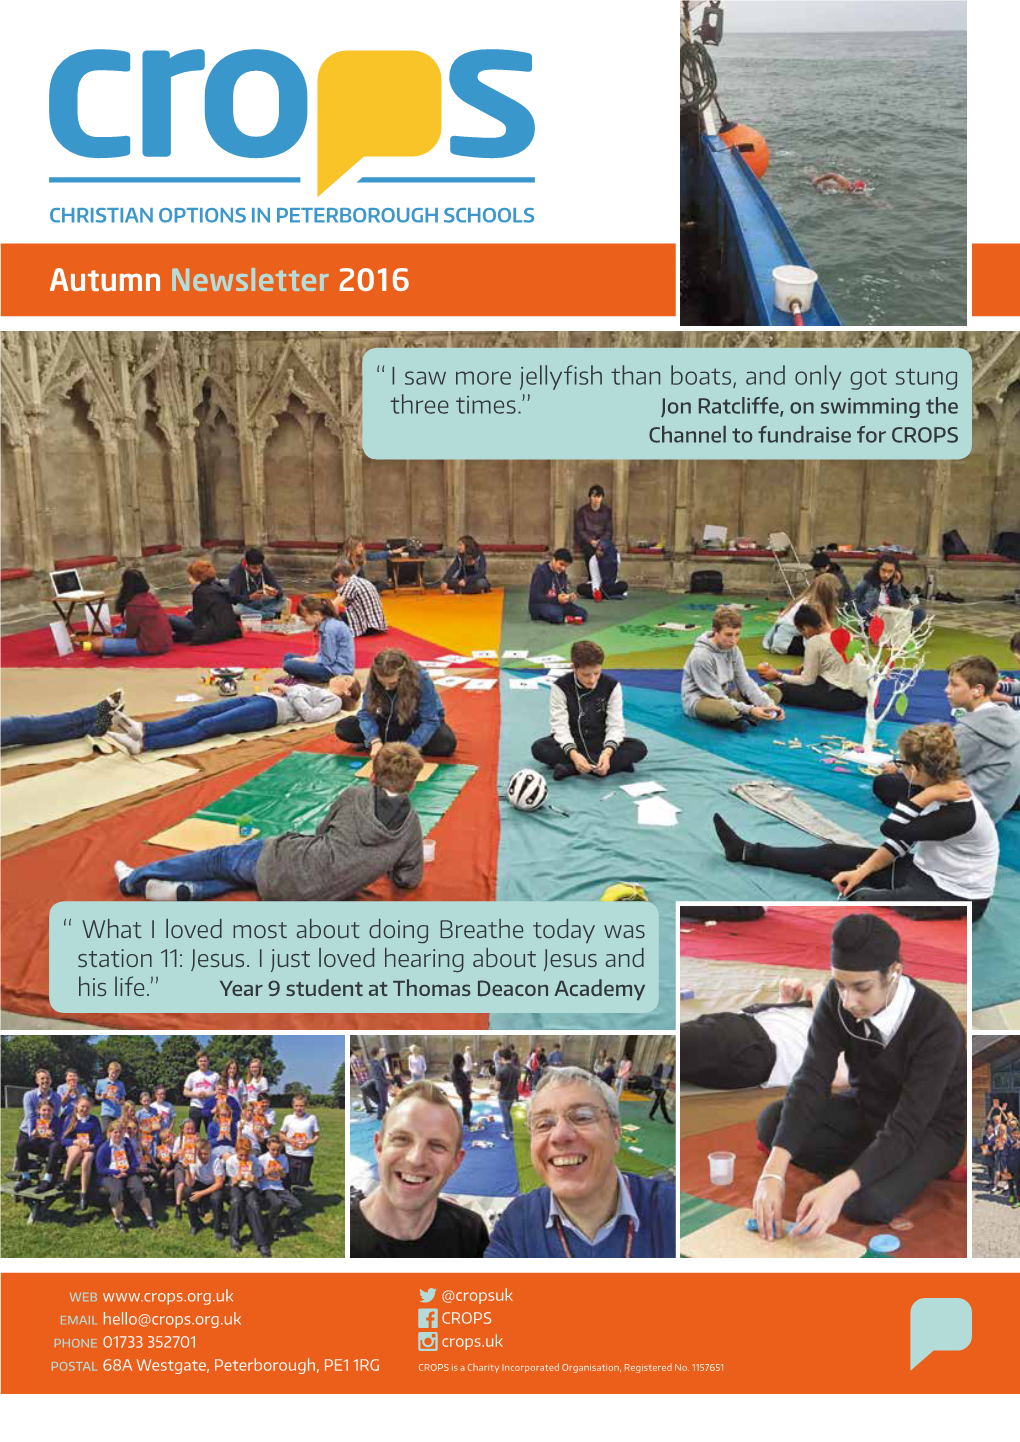 Autumn Newsletter 2016